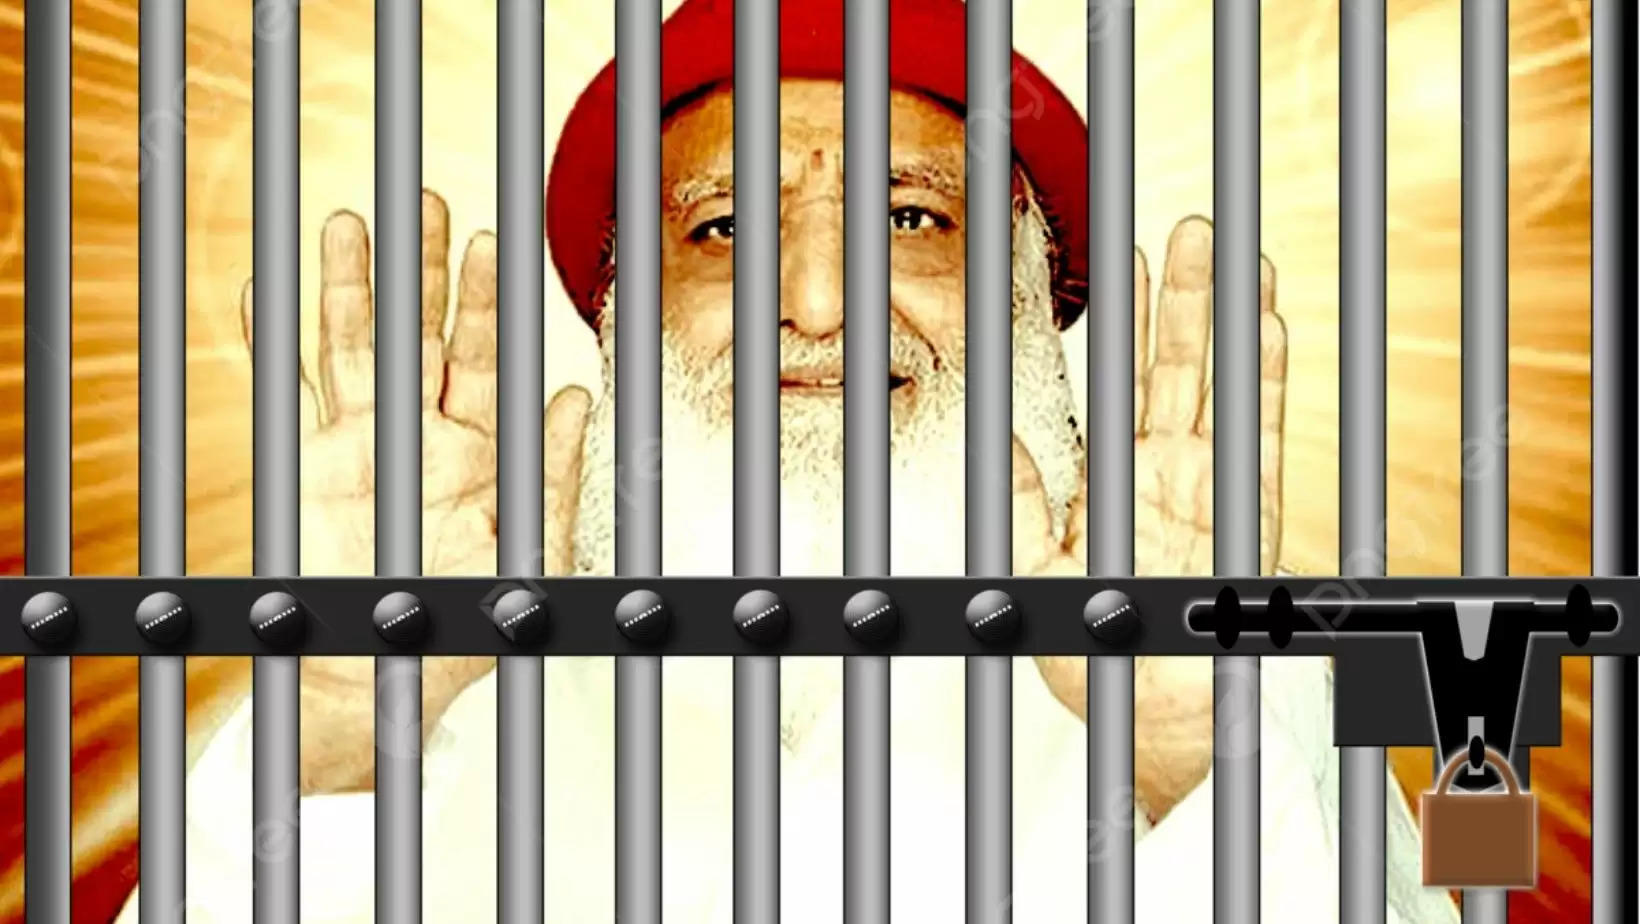 Life imprisonment for Asaram Bapu